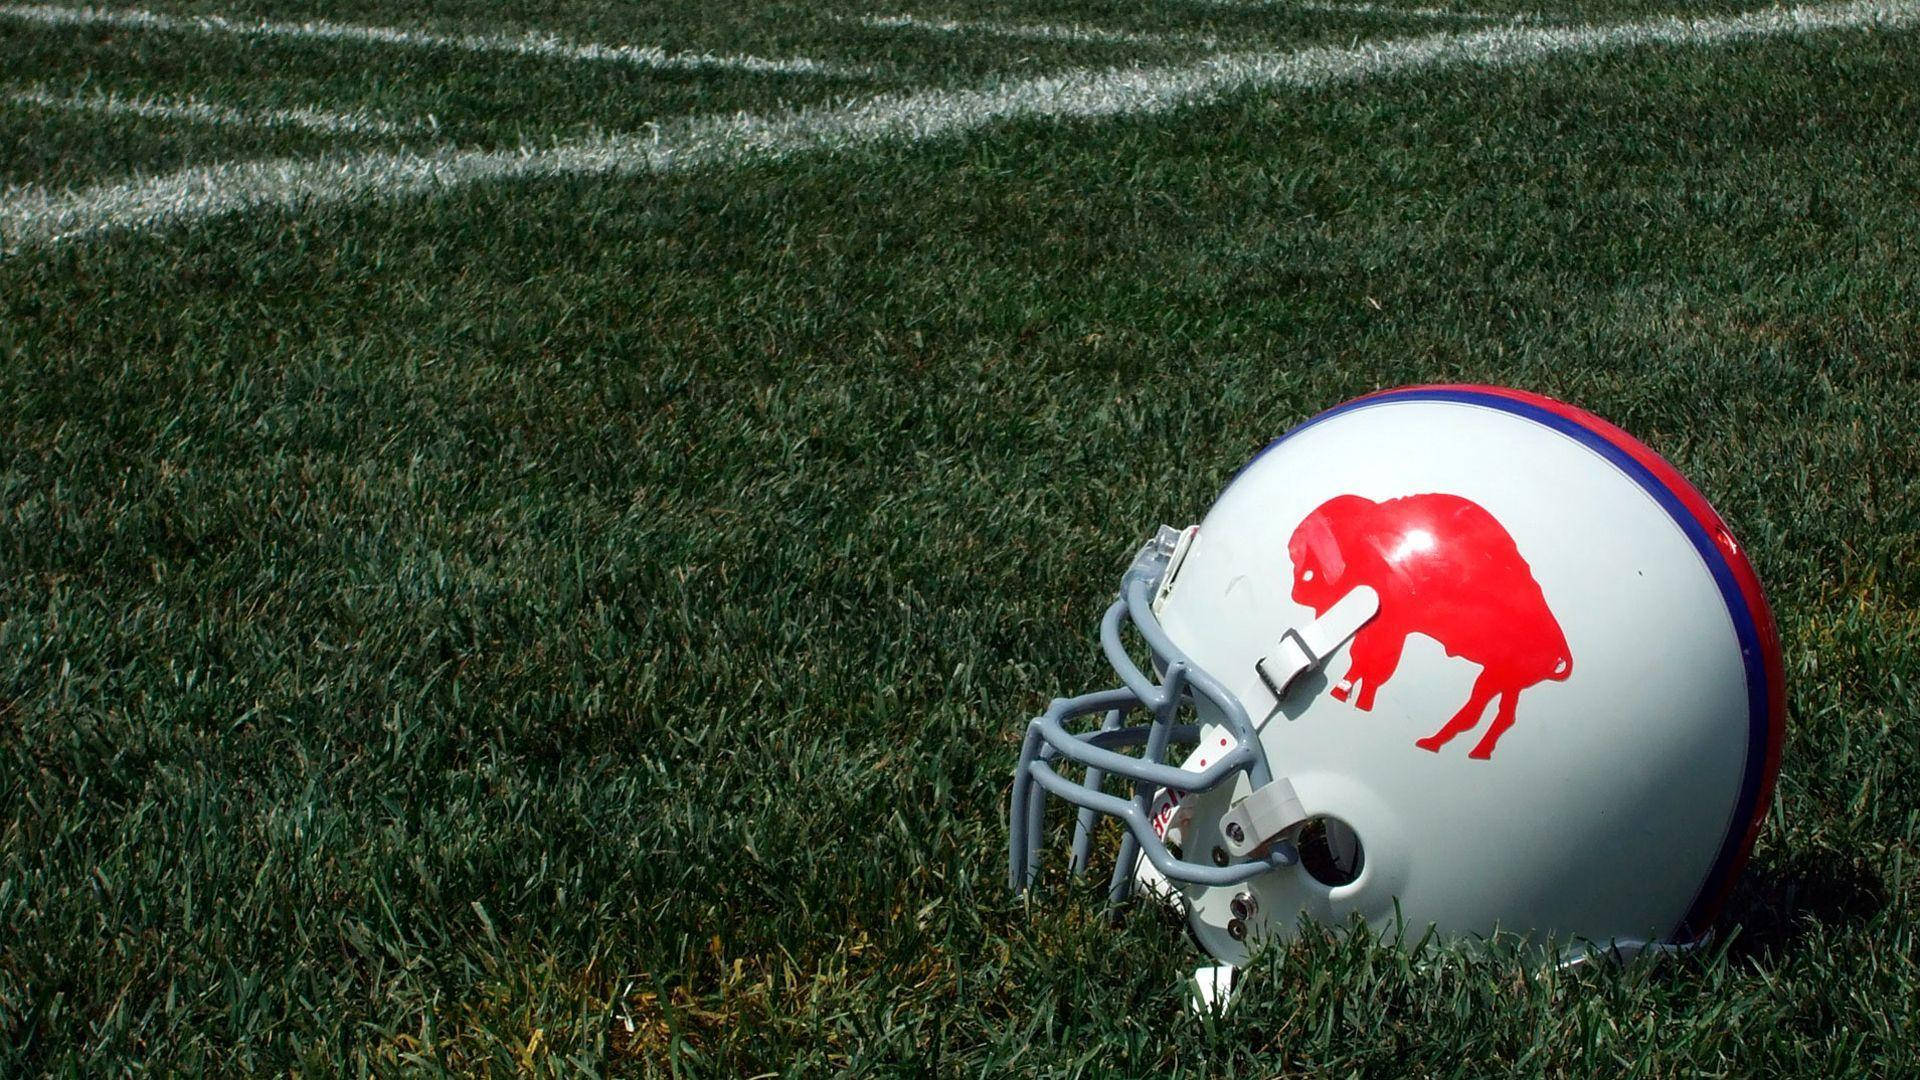 Nfl's Buffalo Bills Team Helmet